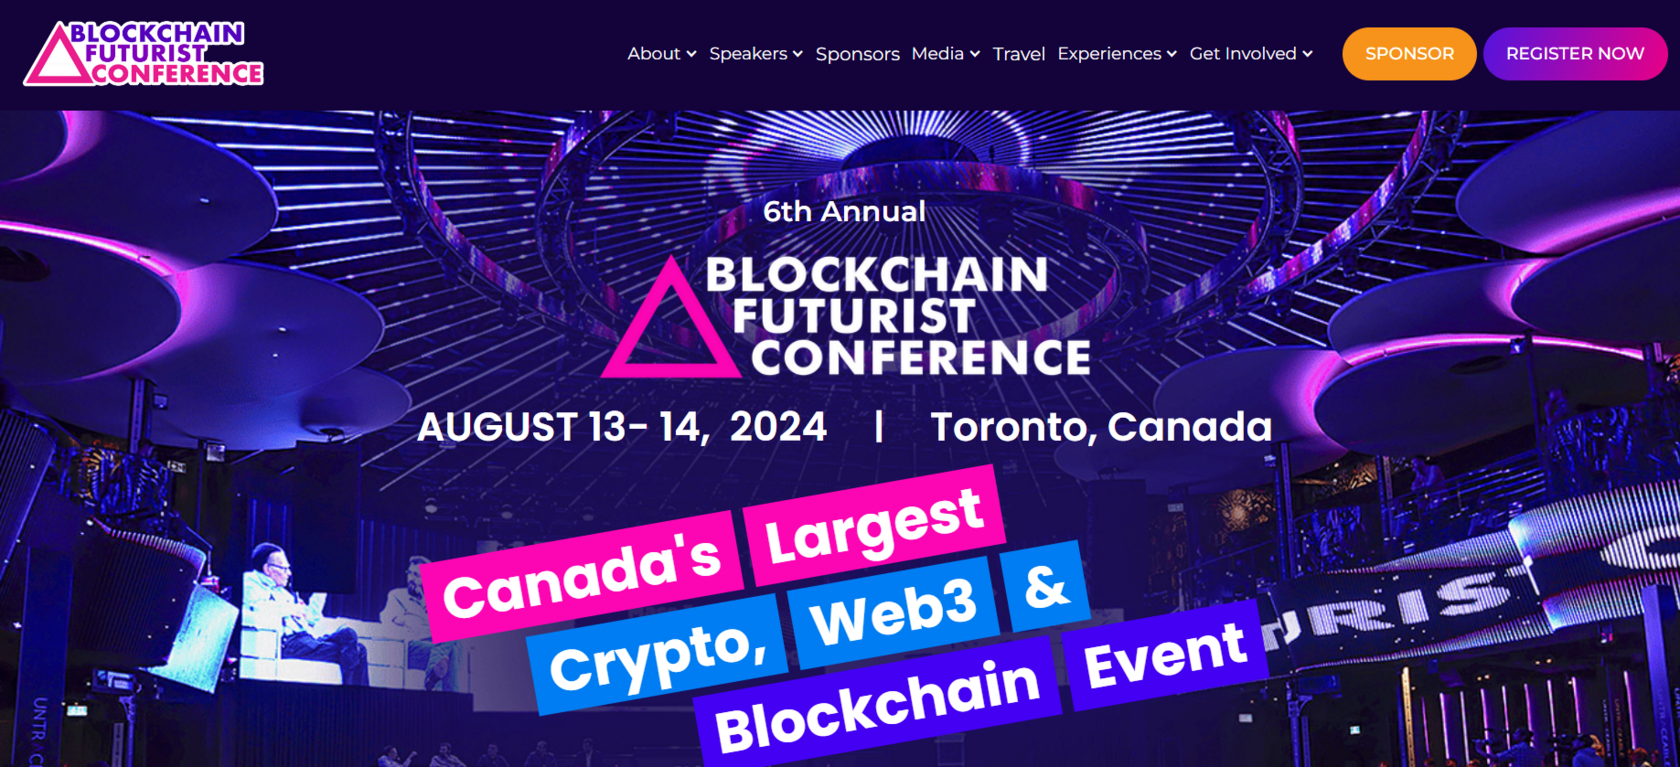 Blockchain Futurist Conference site